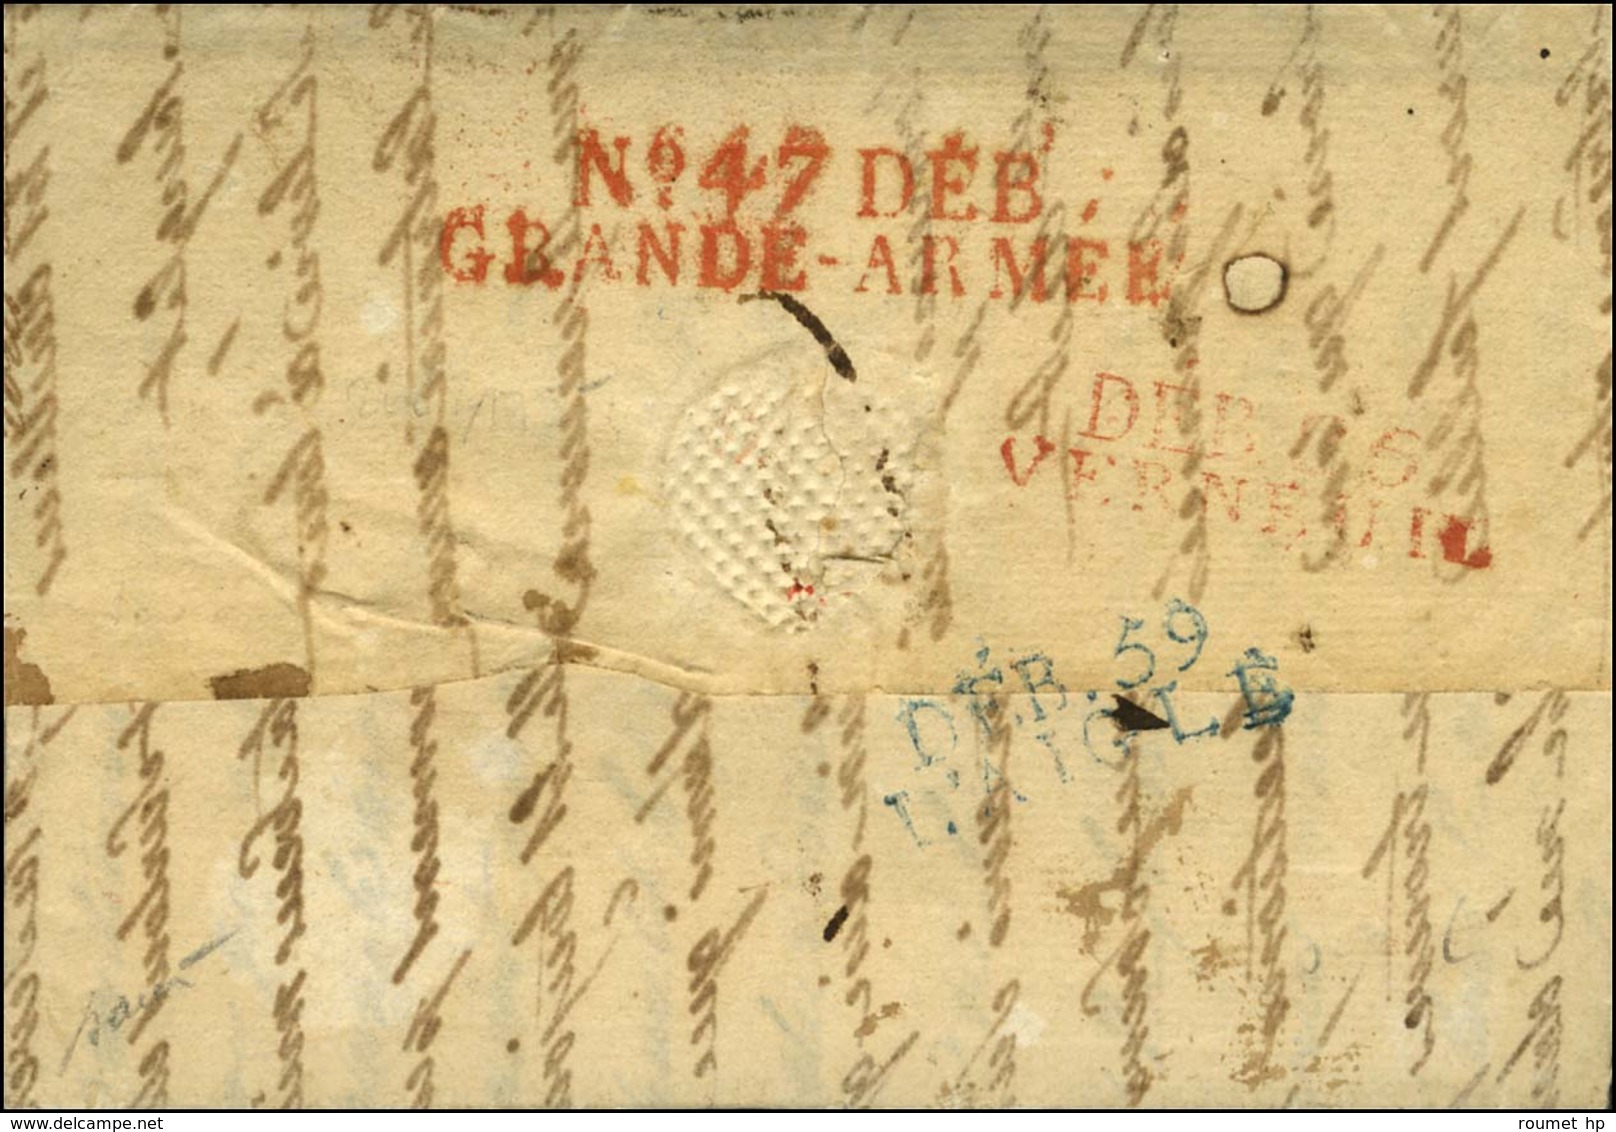 Lettre Avec Texte Daté 1814 Adressée à La Grande Armée Et Réexpédiée. Au Verso, N° 47 DEB. / GRANDE ARMEE Rouge + DEB. 2 - Marques D'armée (avant 1900)